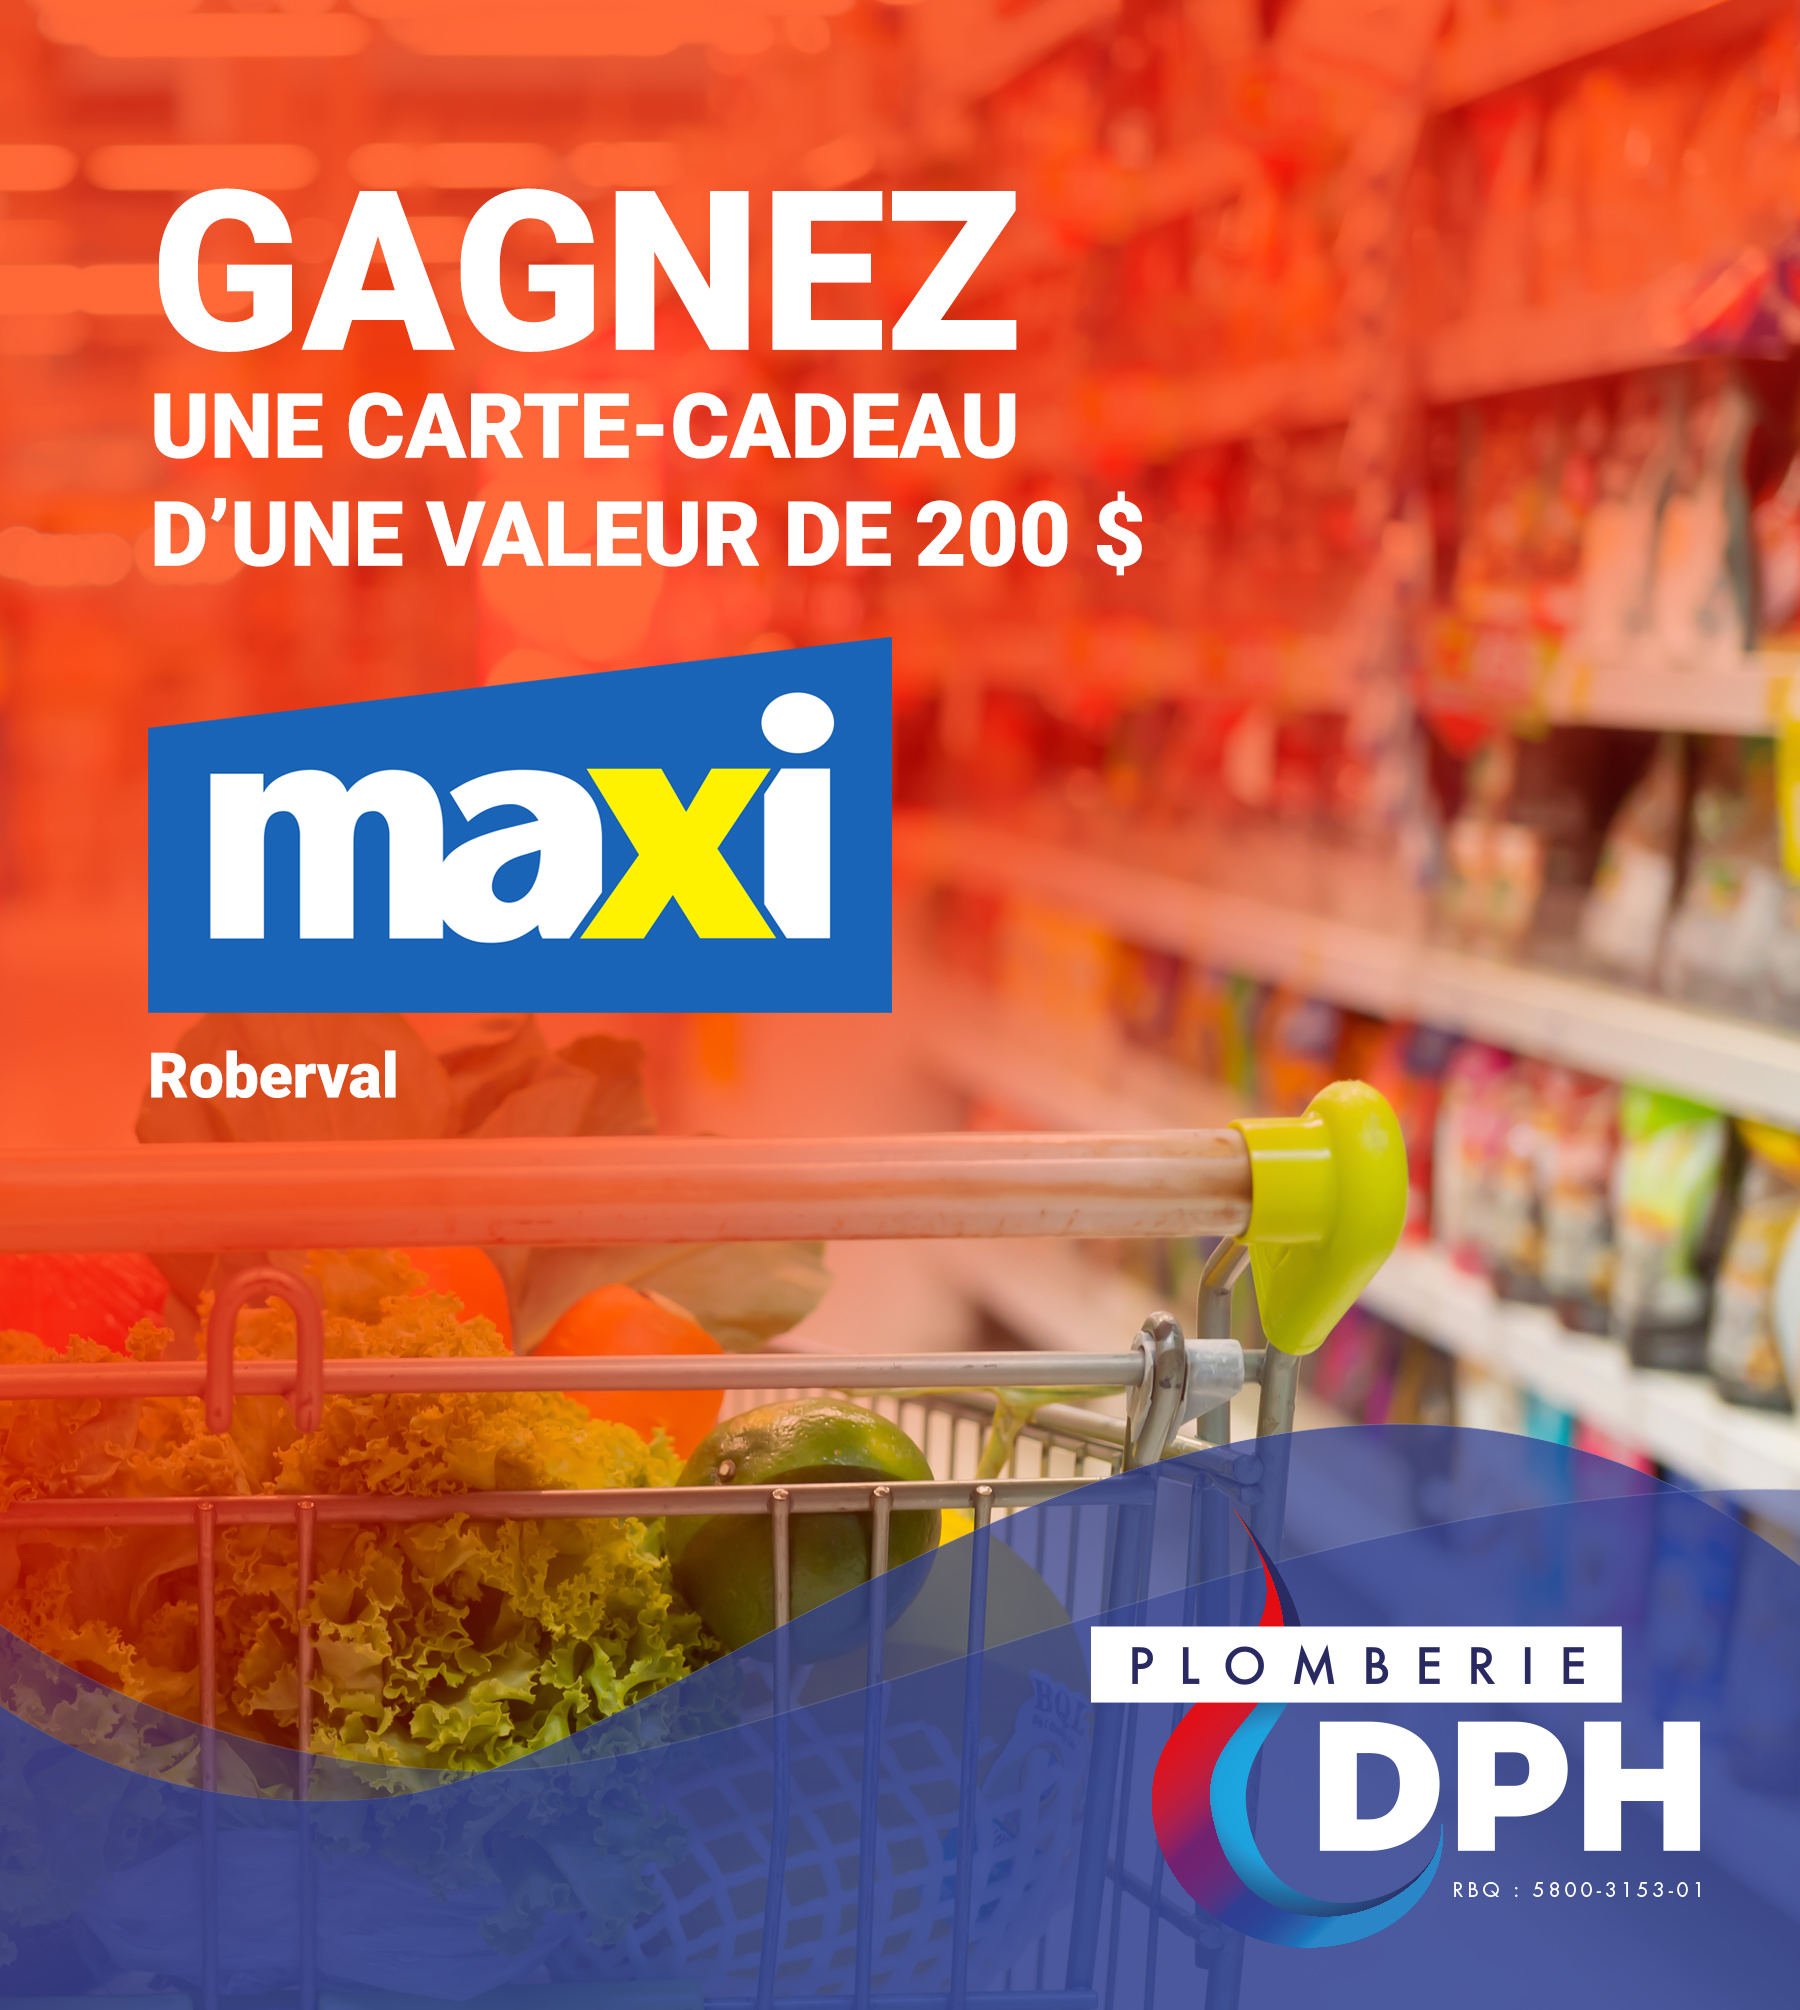 Gagnez Une Carte Cadeau Maxi De 200 Quebec Rabais Gratuits